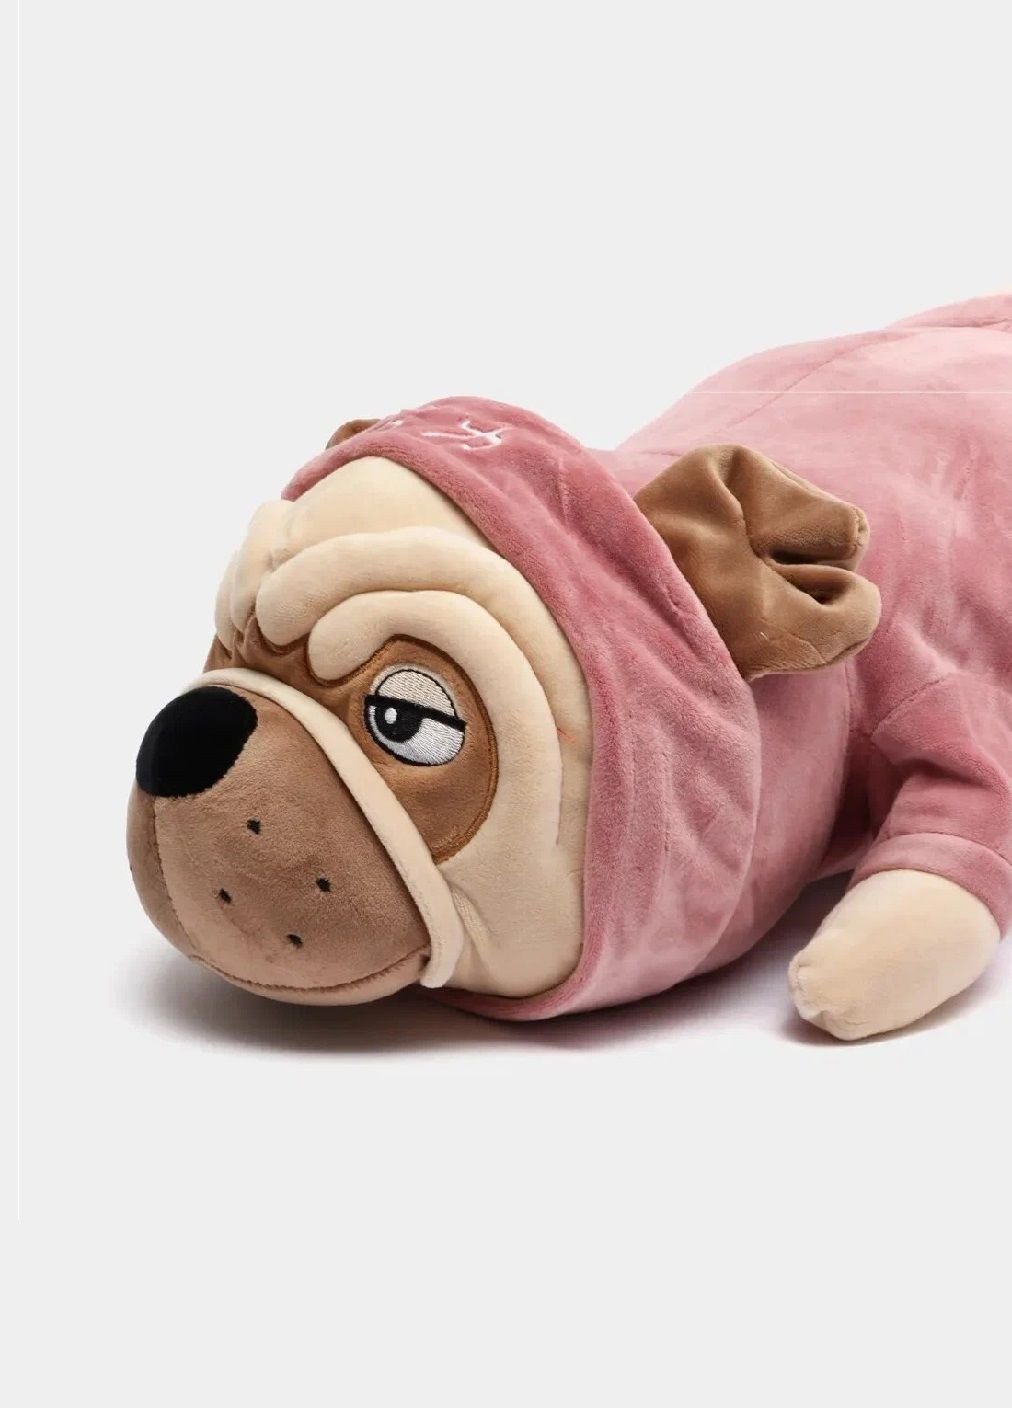 Мягкая игрушка обнимашка подушка антистресс длинная плюшевая собака мопс в одежде 92 см (476525-Prob) С розовой кофтой Unbranded (283608287)